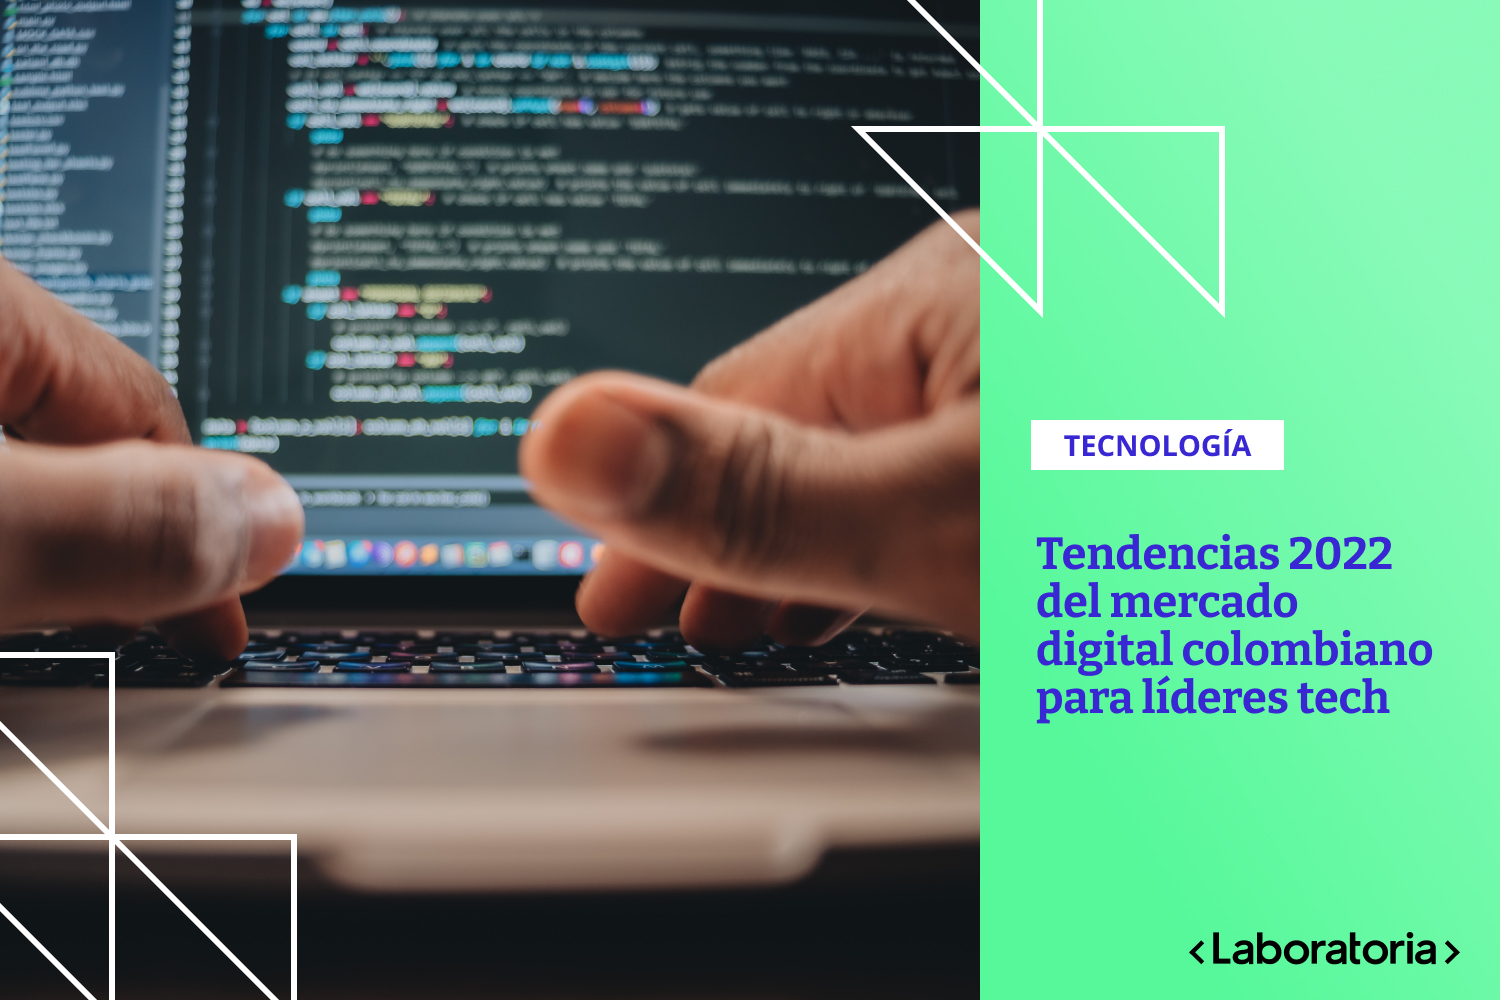 Estas son 4 tendencias que todo líder tech debe tener en cuenta este 2022 en la creación y desarrollo de productos digitales en Colombia.